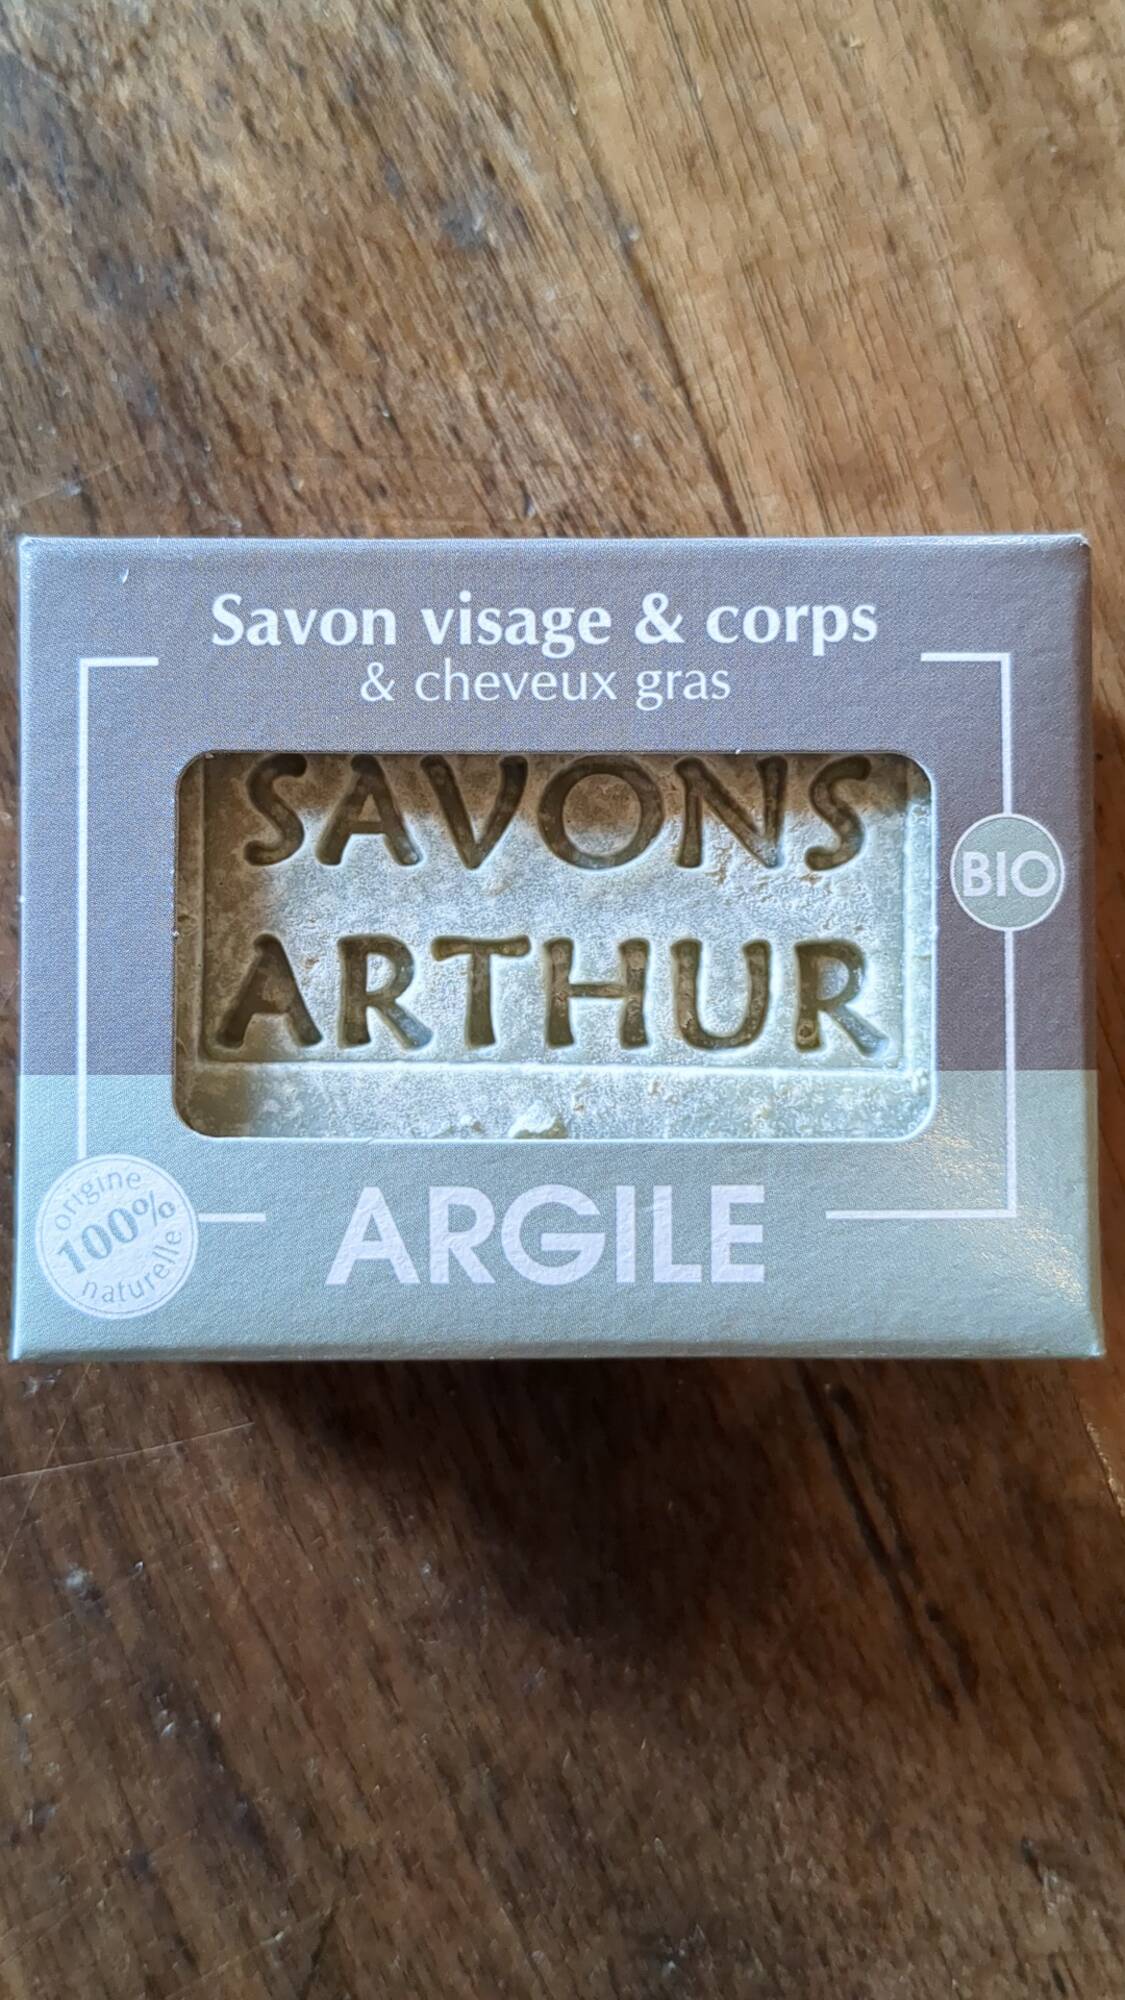 SAVONS ARTHUR - Biologique - Savon arthur argile